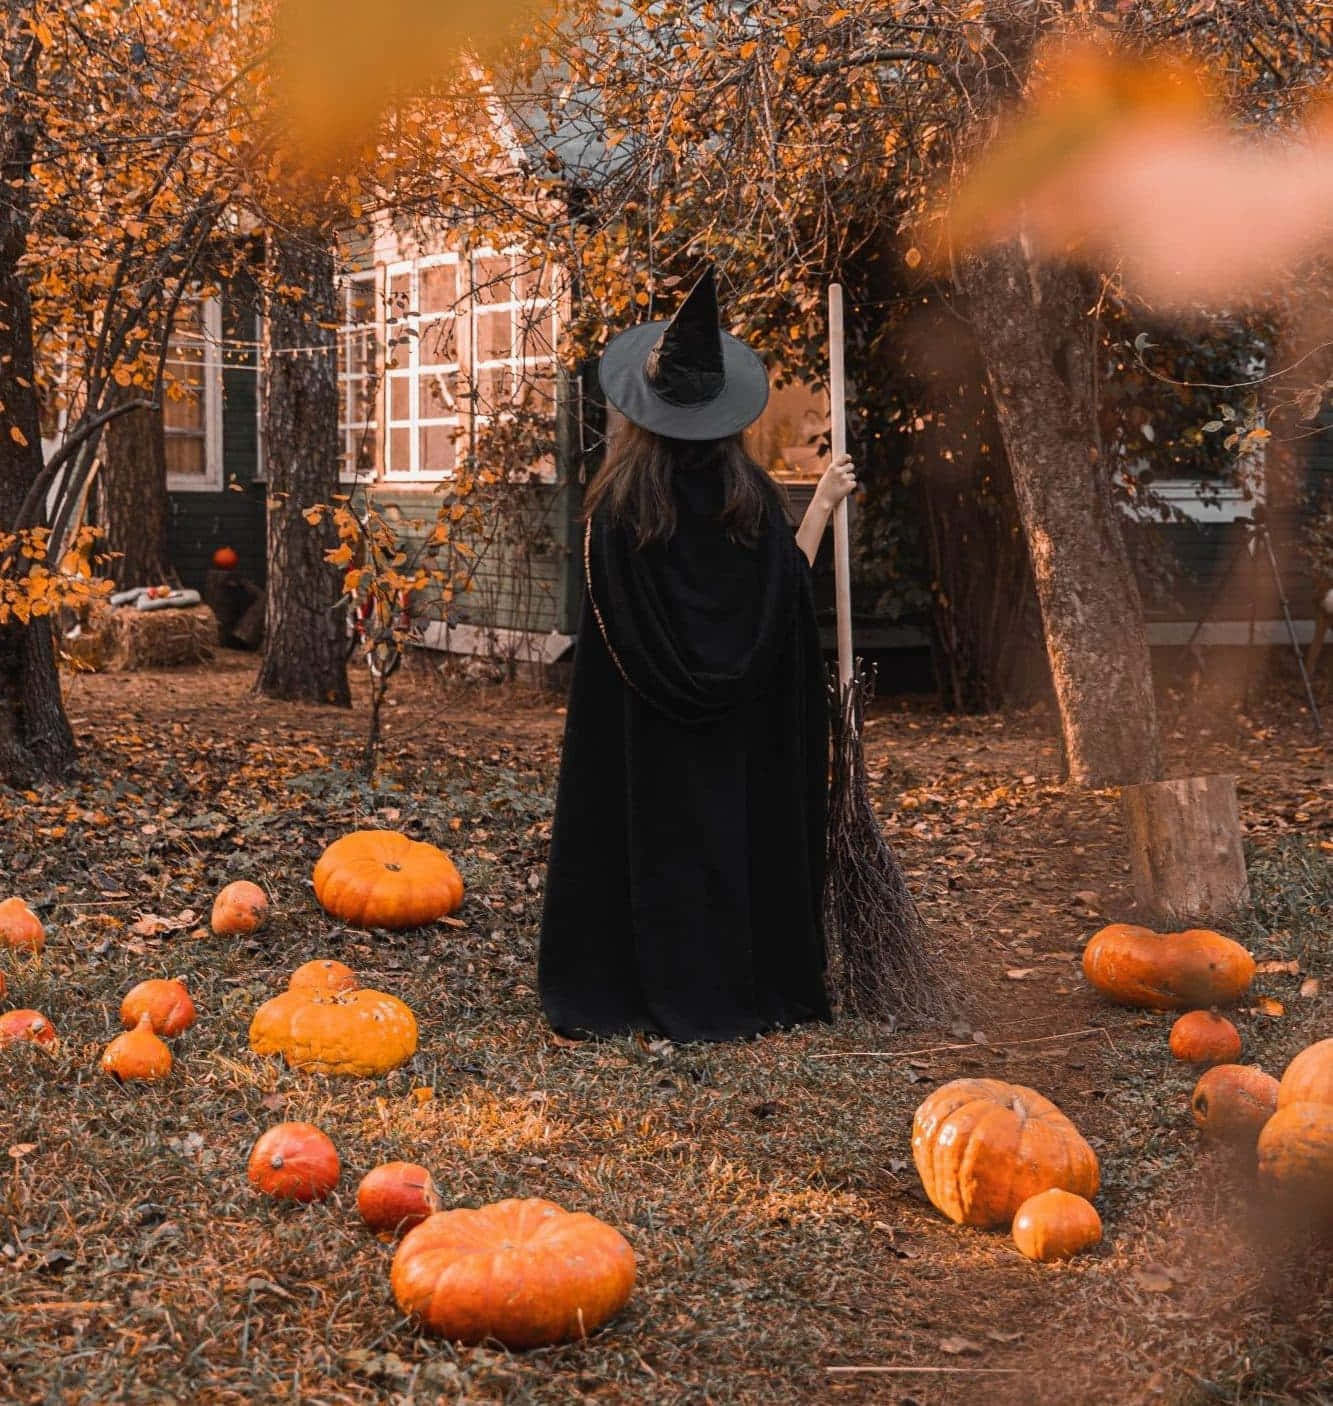 Autumn Witch Among Pumpkins.jpg Wallpaper